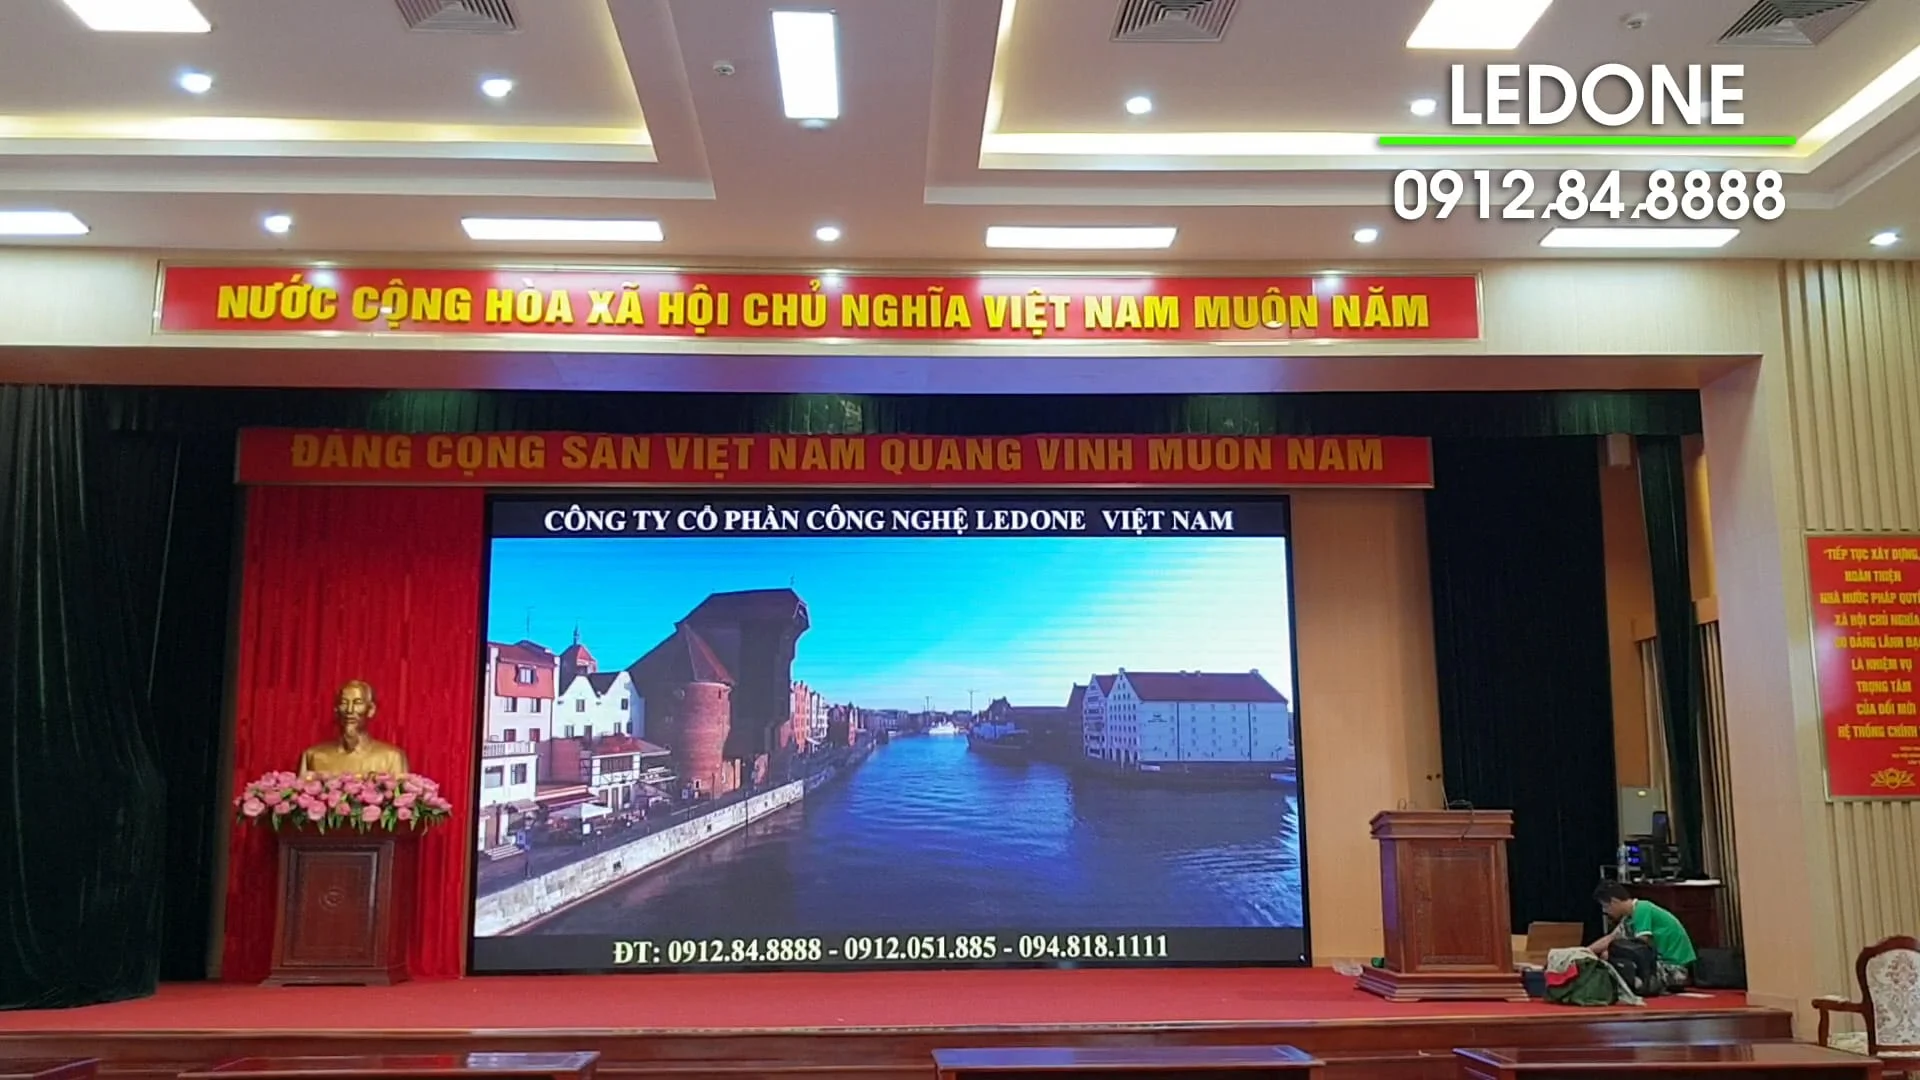 Thi công màn hình Led P4 tại Tập đoàn Viettel khu công nghiệp Láng Hòa Lạc - 11.900.000 VNĐ/m2  